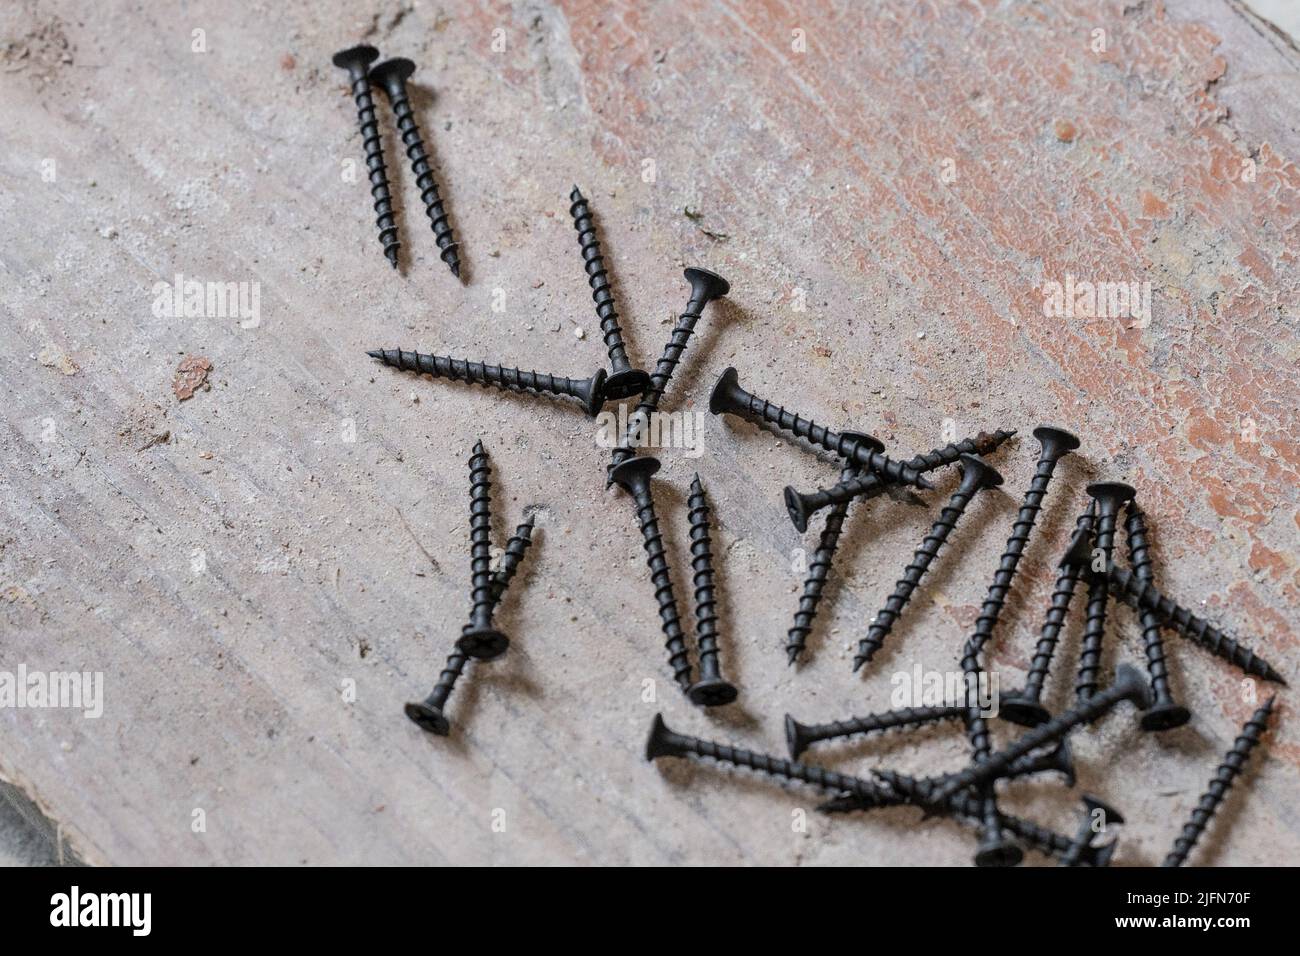 Les vis en métal noir se trouvent sur le sol en béton, les vis sur le bois  Photo Stock - Alamy